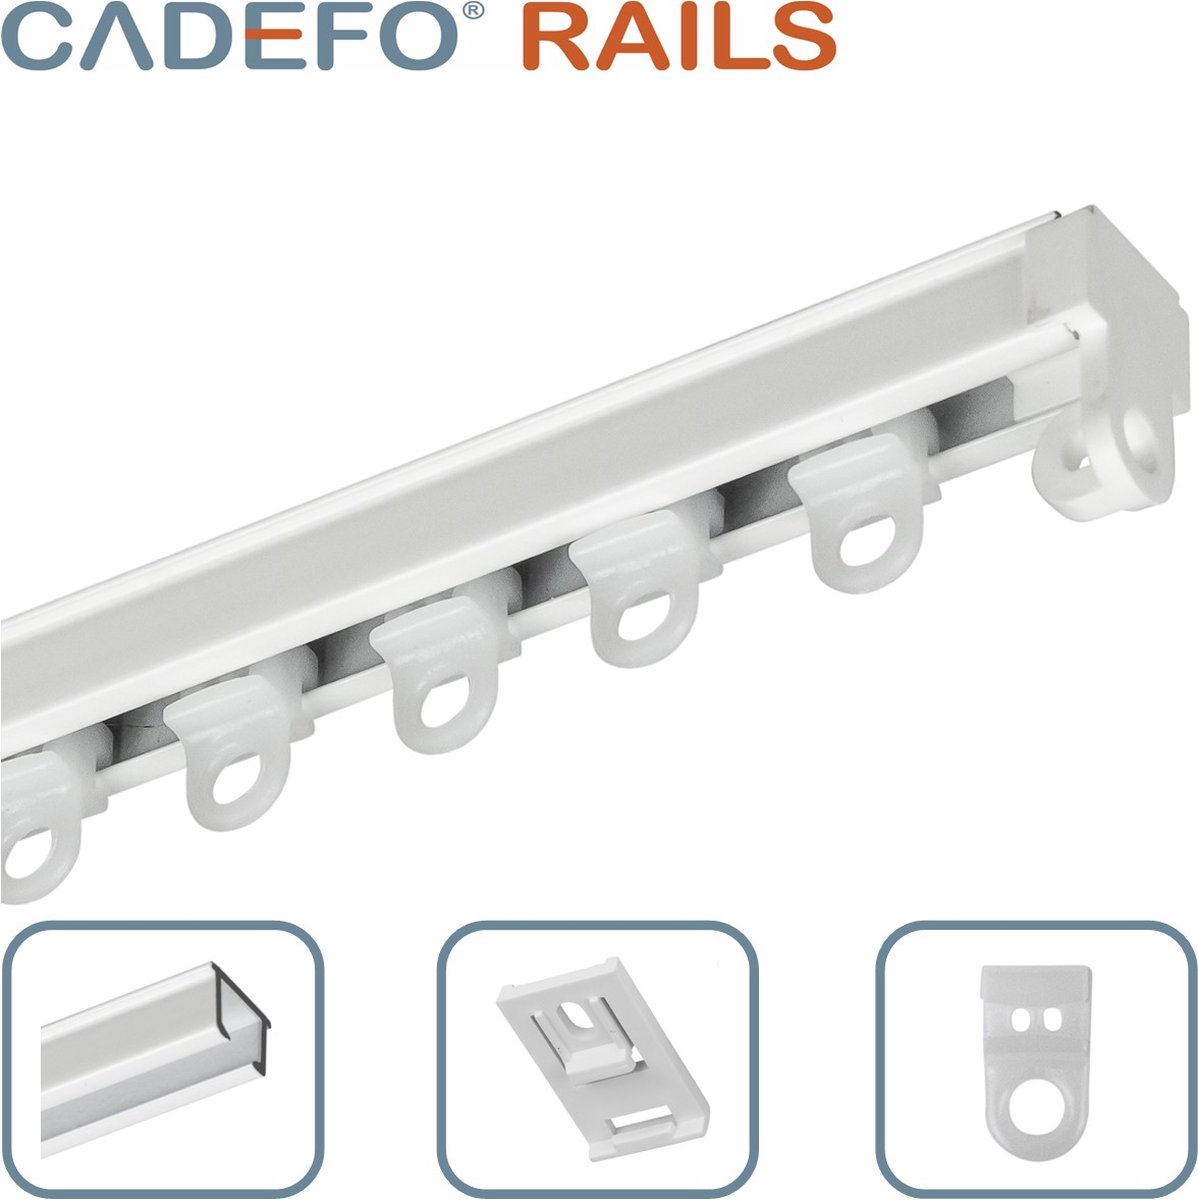 CADEFO RAILS (351 - 400 cm) Gordijnrails - Compleet op maat! - UIT 1 STUK - Leverbaar tot 6 meter - Plafondbevestiging - Lengte 388 cm